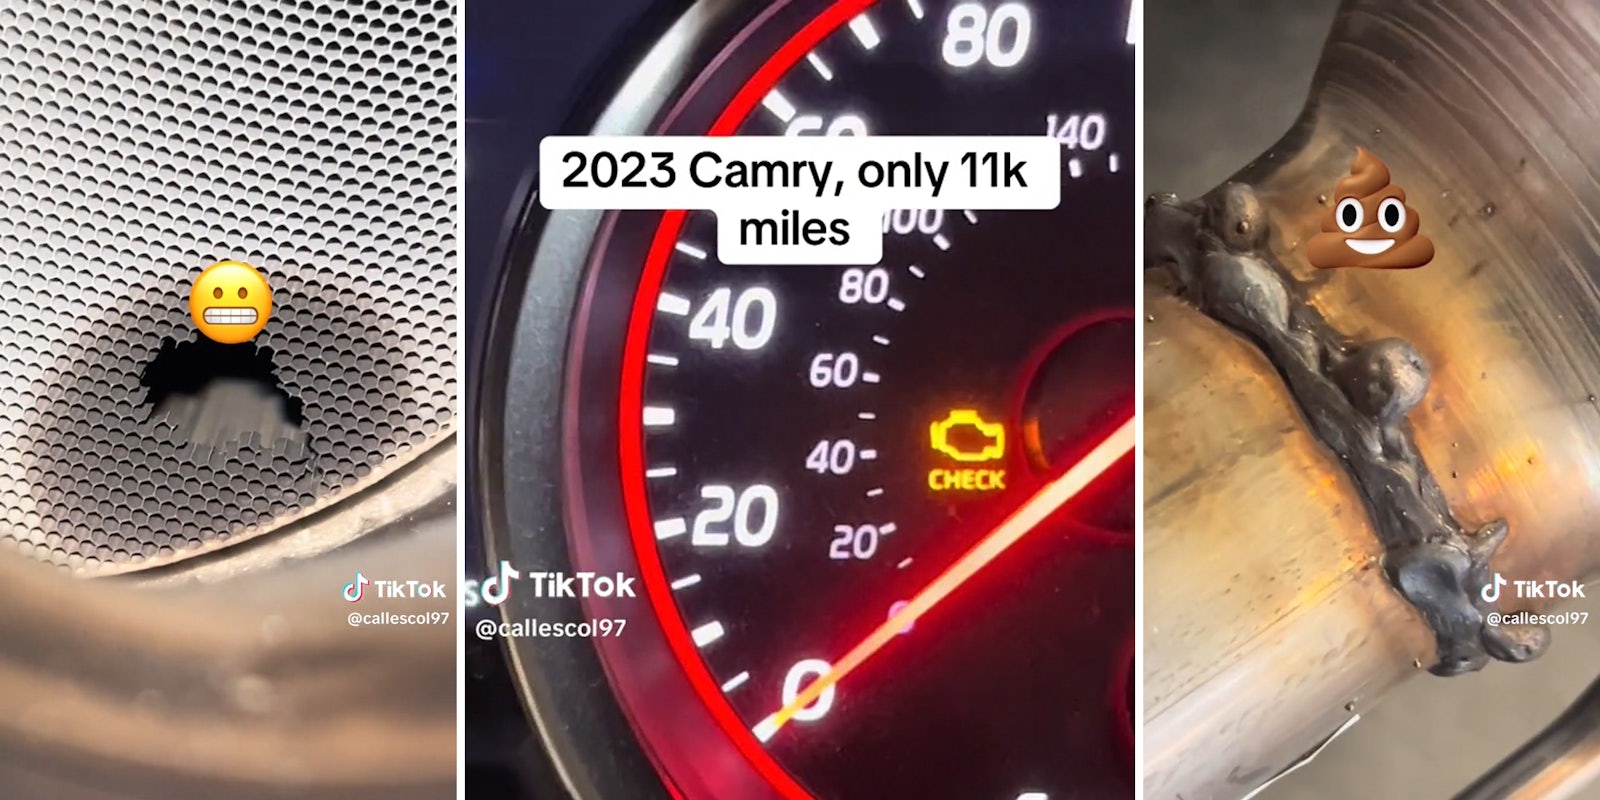 grimace emoji over broken section of car part (l) check engine light with caption '2023 Camry, only 11k miles' (c) poop emoji over sloppy weld work (r)